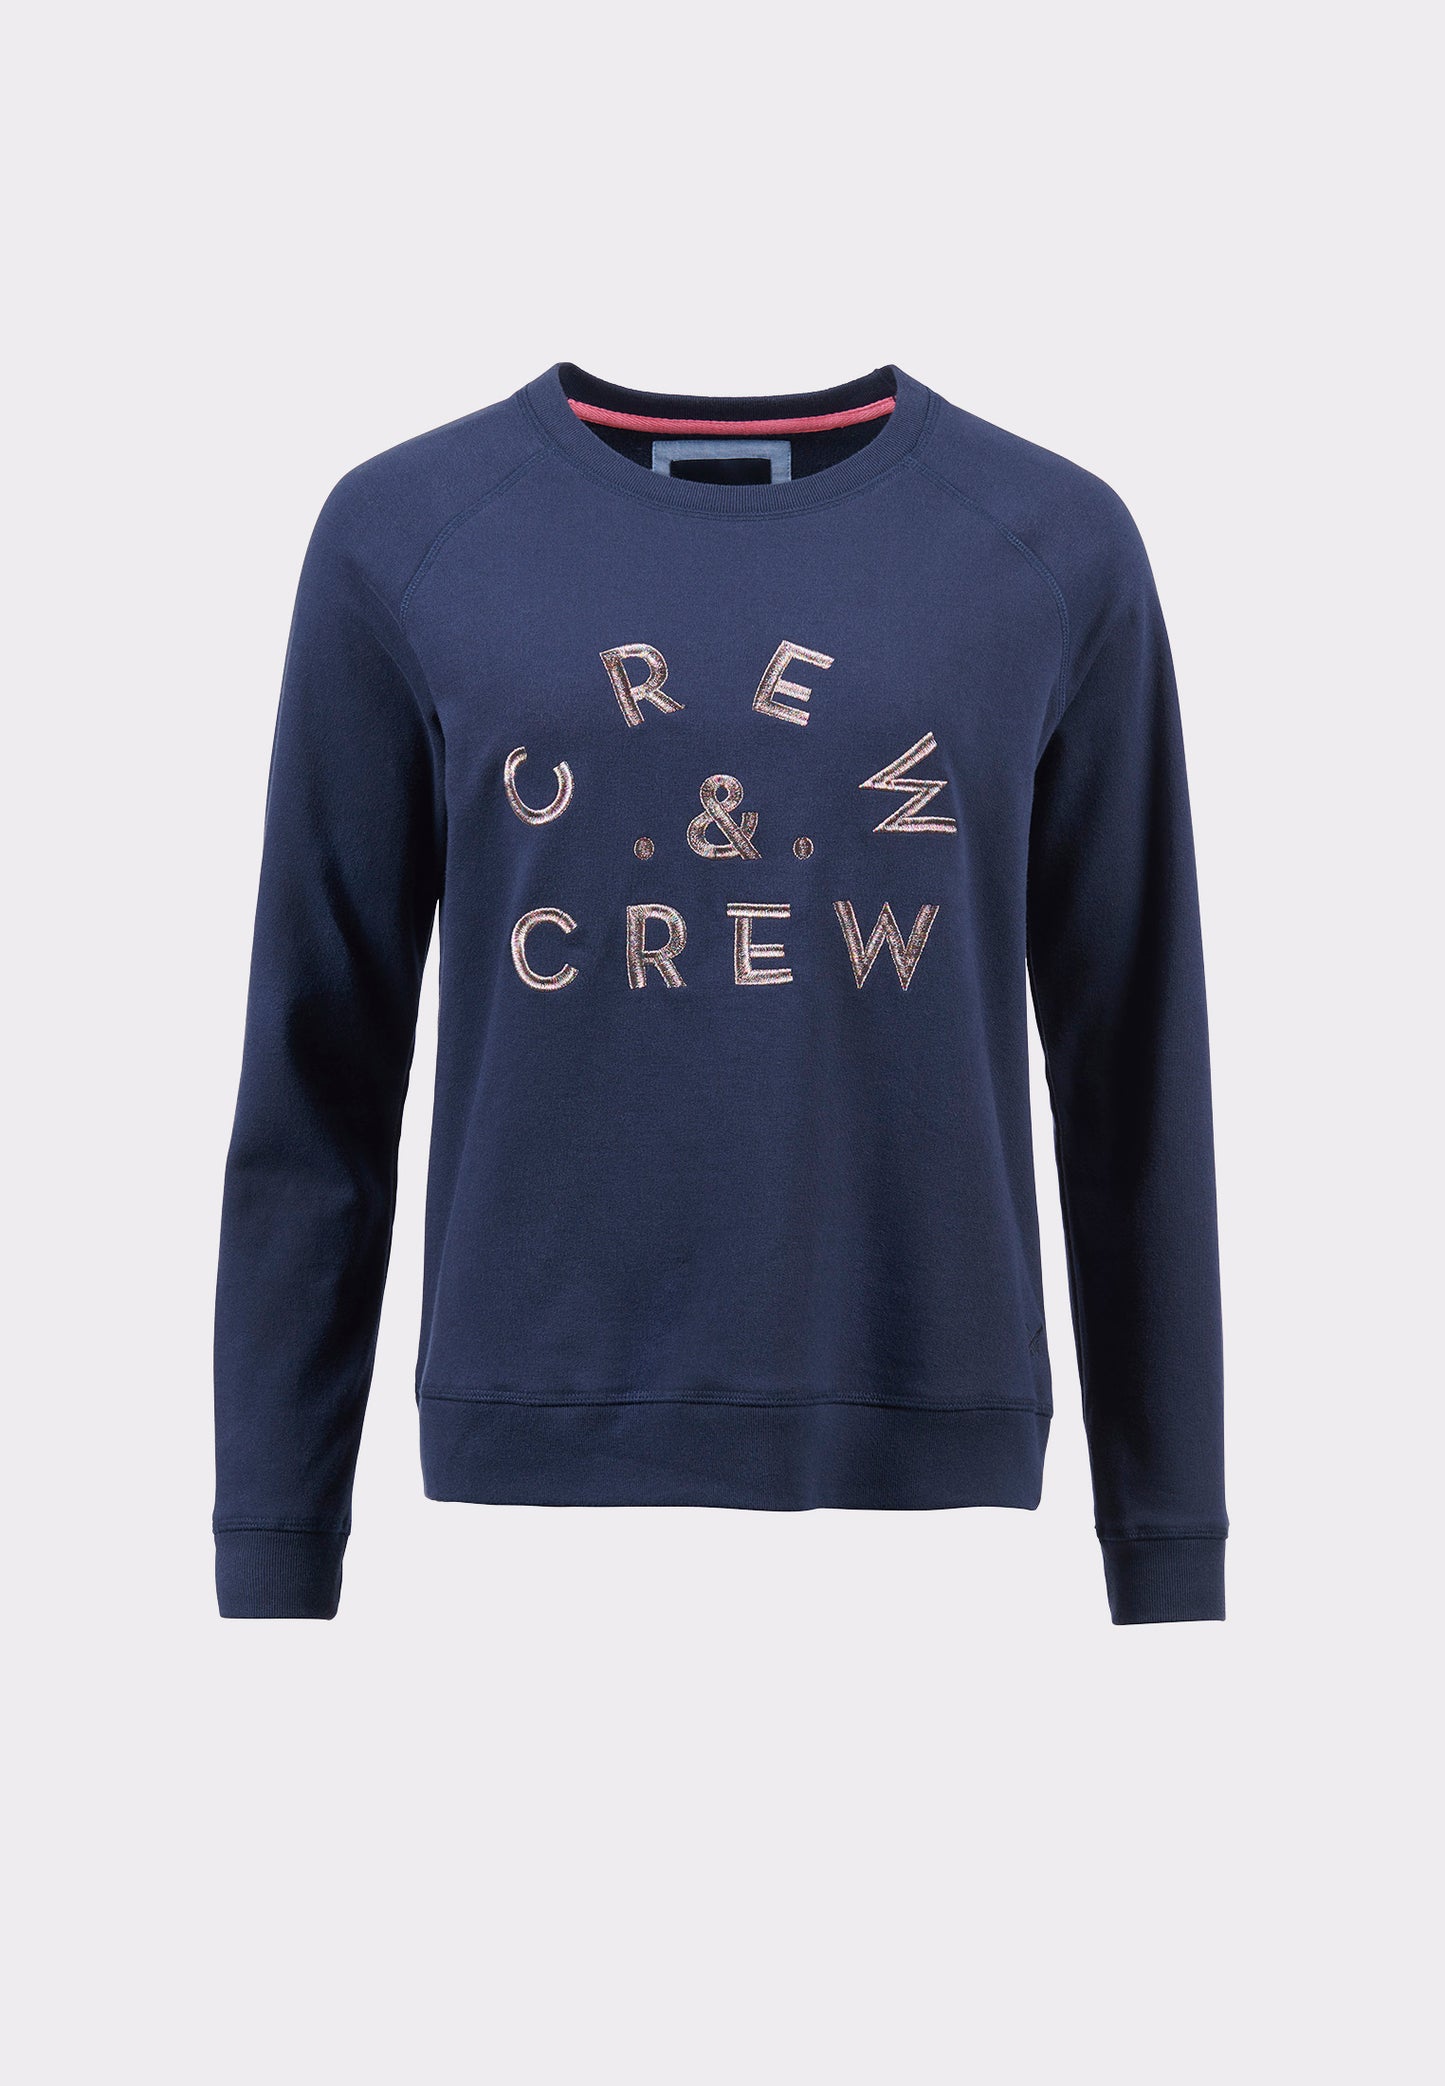 Crew Clothing Graphic Crew Sweatshirt